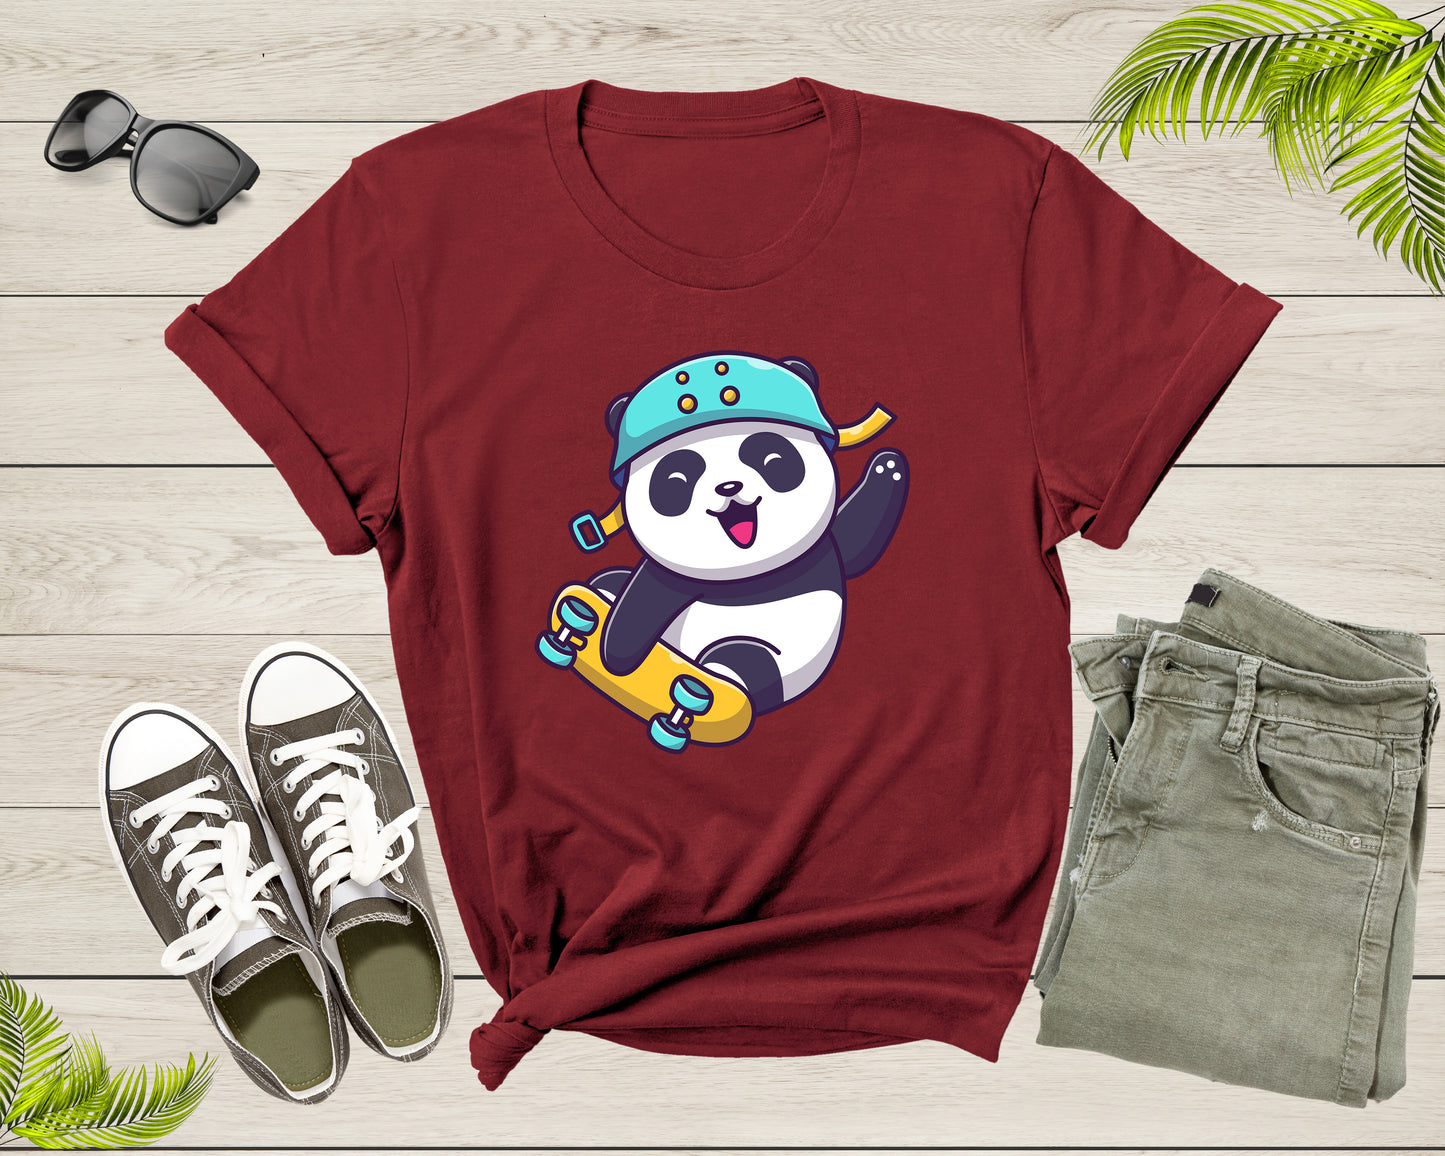 Skateboarding Happy Panda Skateboard Cute Sporty Animal T-Shirt Panda Skateboarder Lover Gift T Shirt for Men Women Boys Girls Tshirt